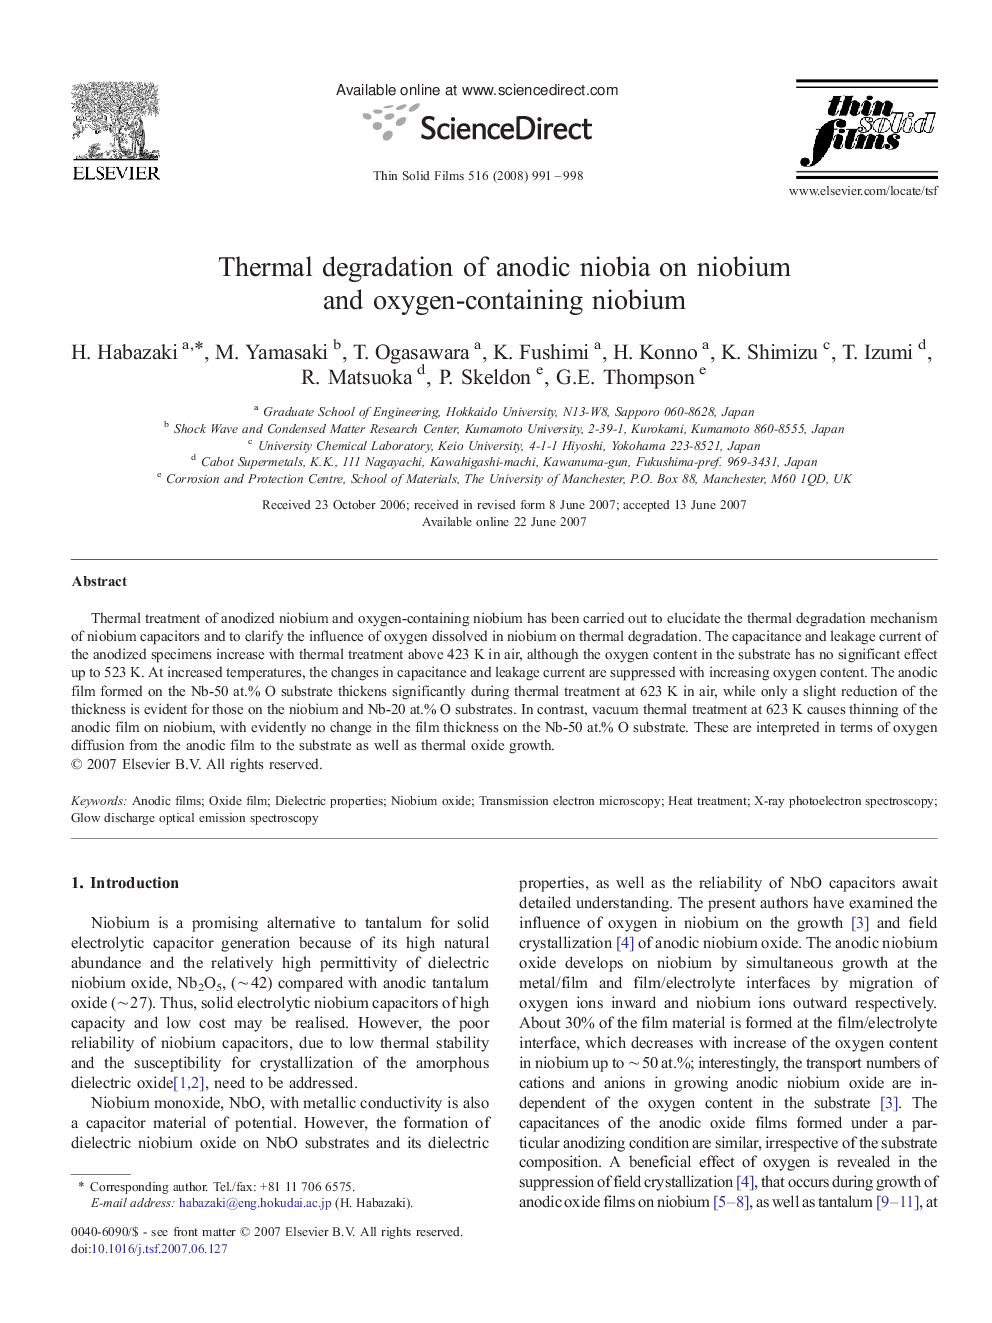 Thermal degradation of anodic niobia on niobium and oxygen-containing niobium